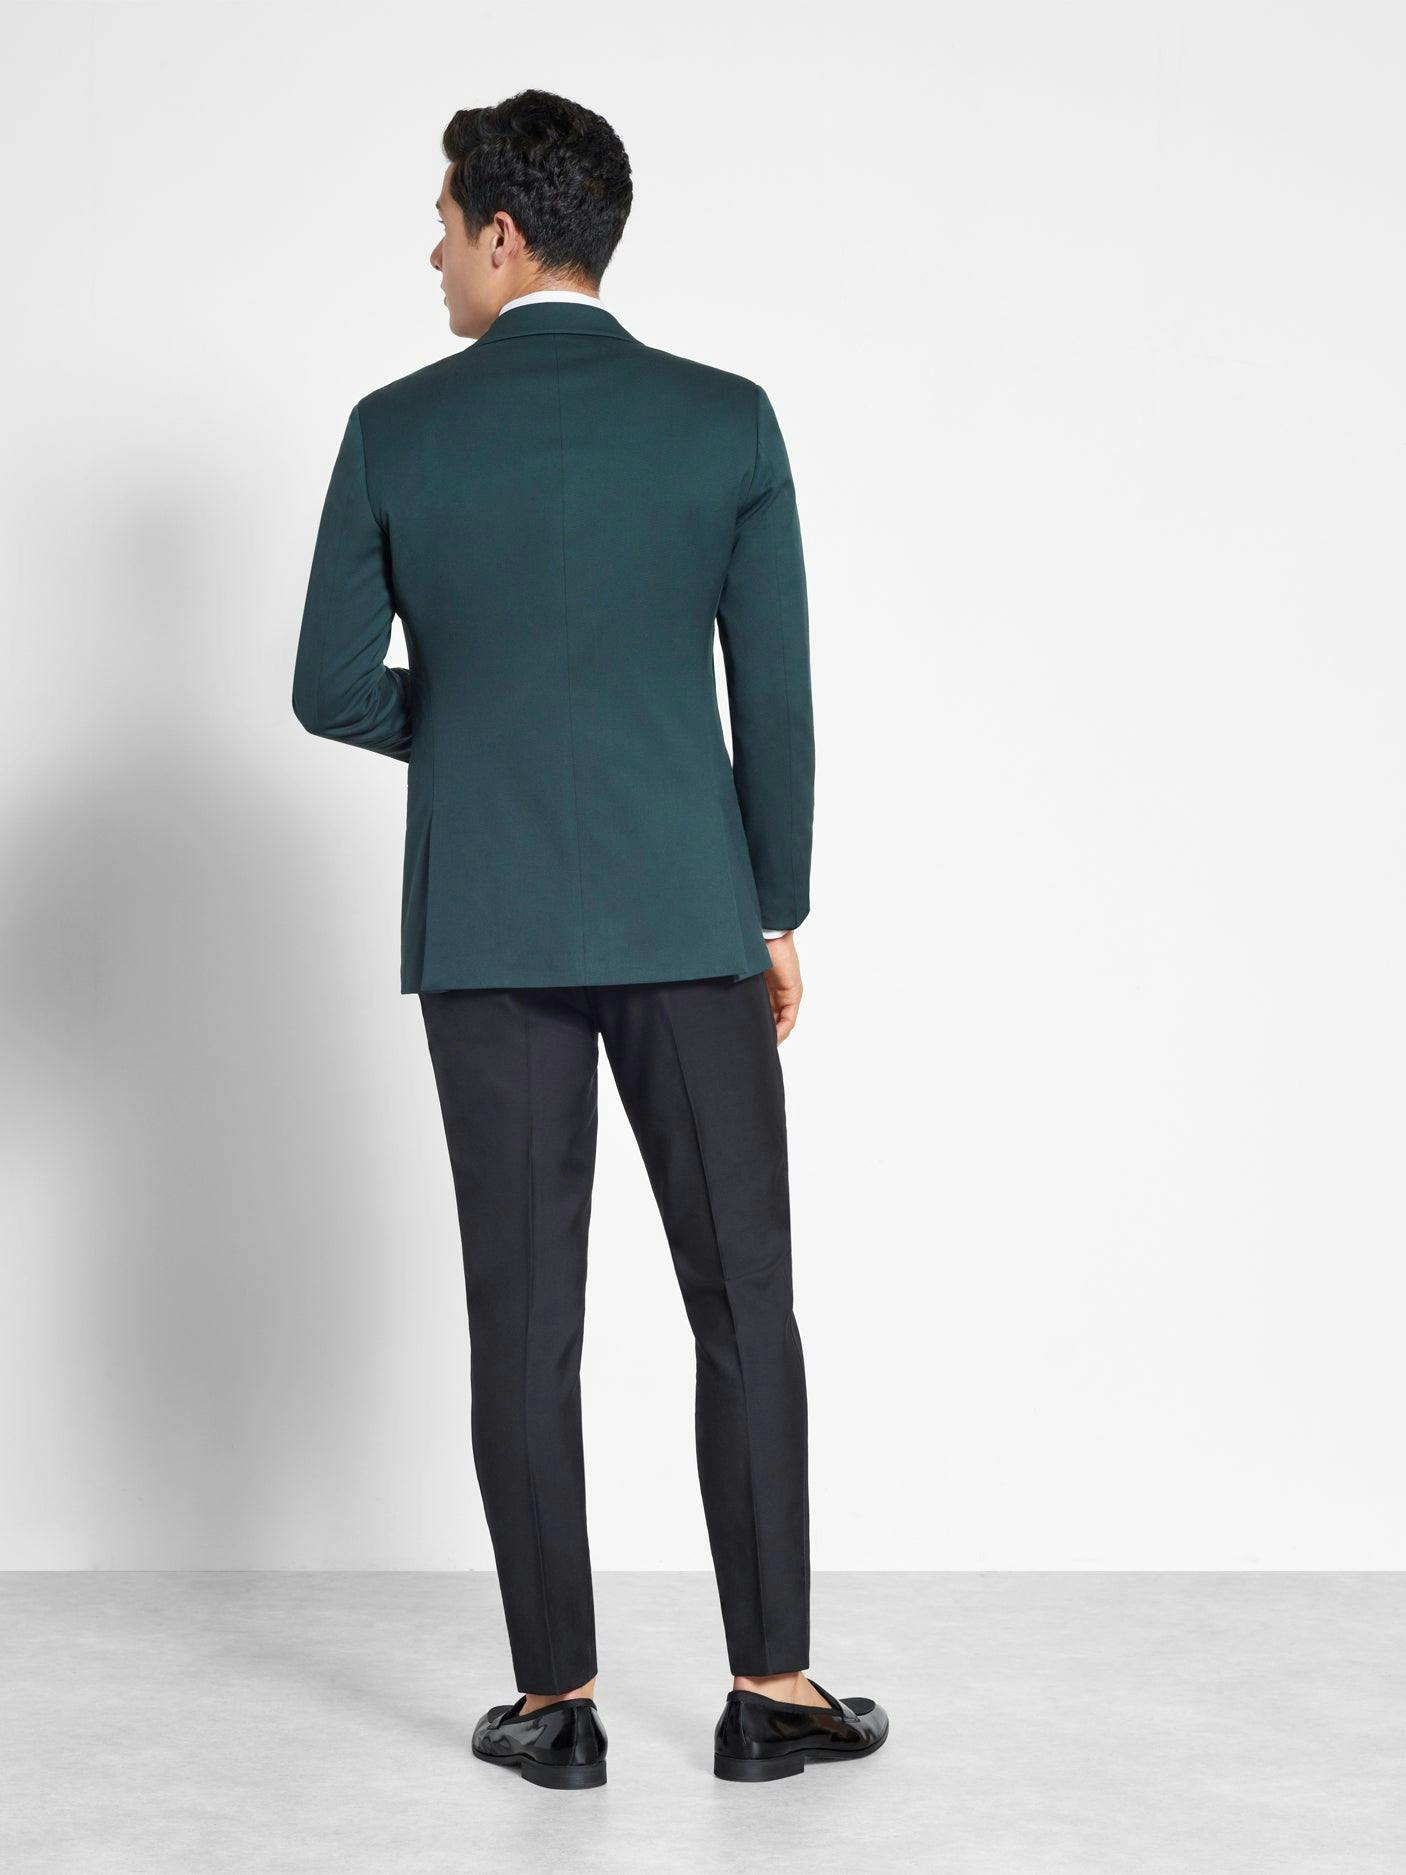 Emerald Shawl Jacket Tuxedo